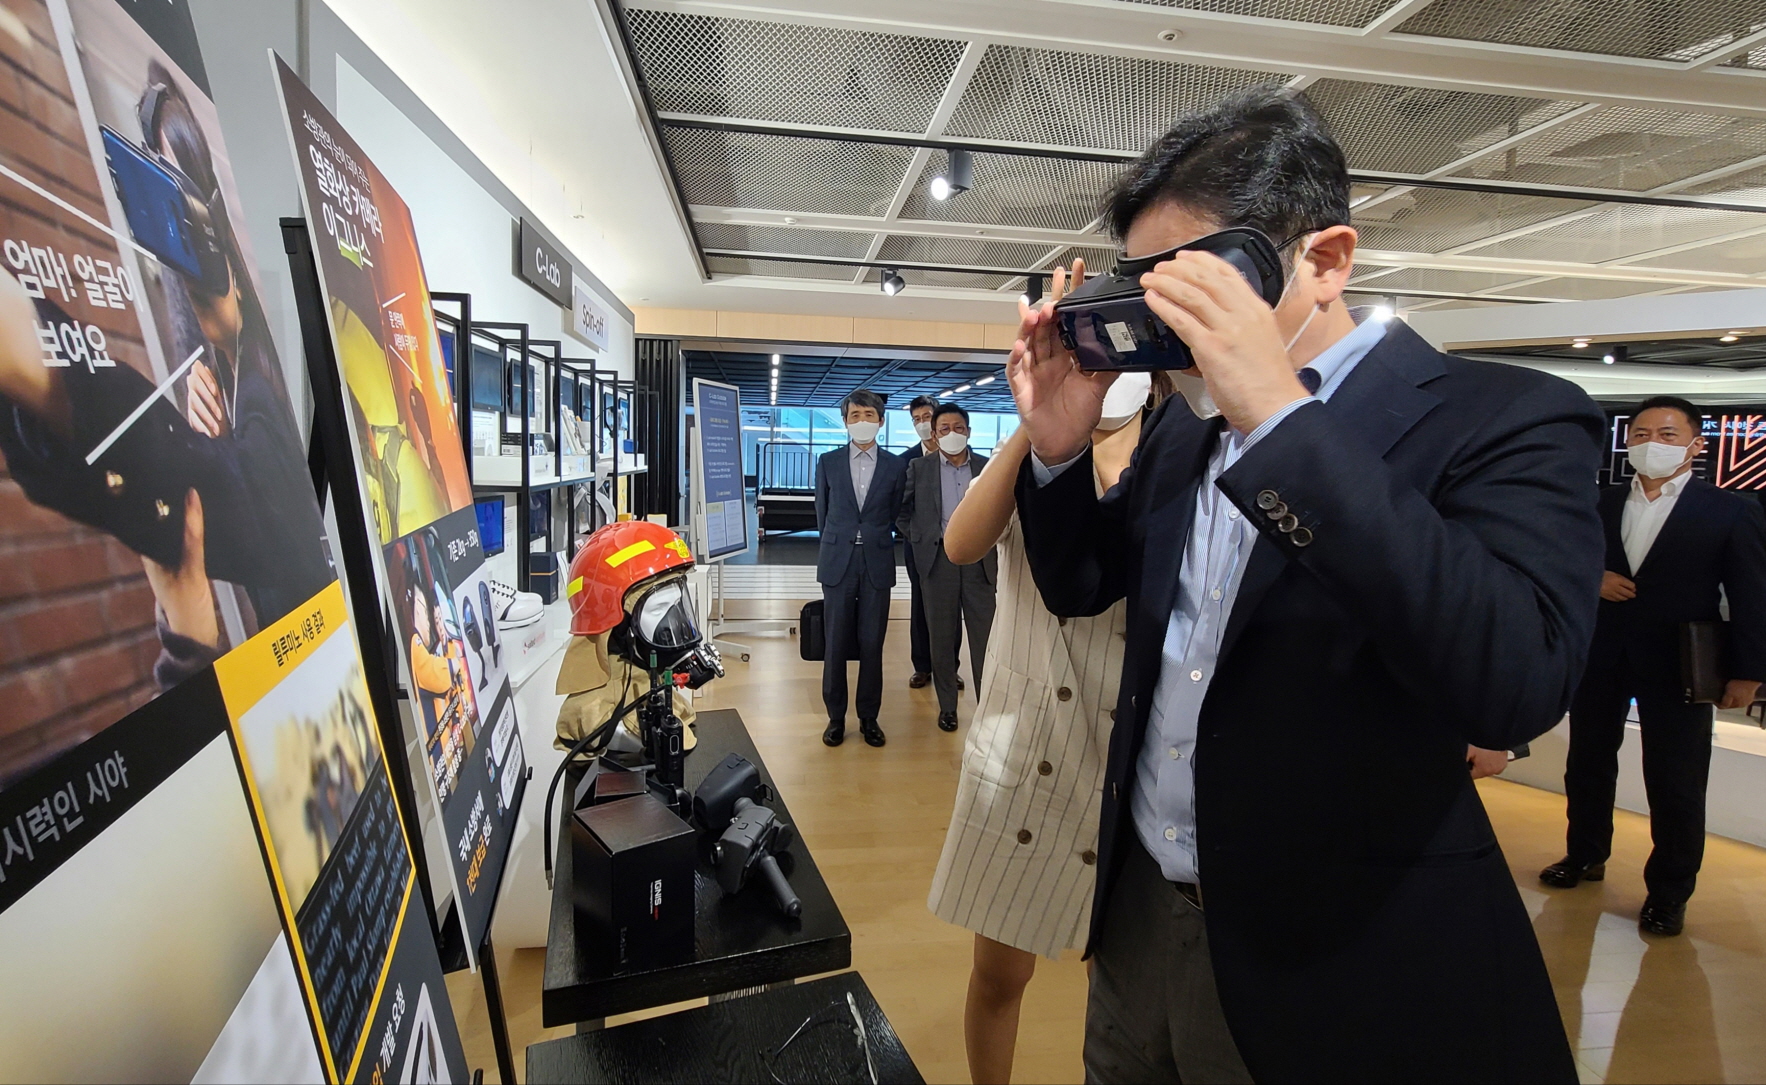 6일 삼성전자 수원사업장을 찾은 이재용 부회장이 ‘C랩 갤러리’에서 사내 스타트업 ‘릴루미노’ 기술을 체험하고 있다. ‘릴루미노’는 가상현실(VR) 기술을 이용한 시각장애인 시각 보조 솔루션이다. 삼성전자 제공